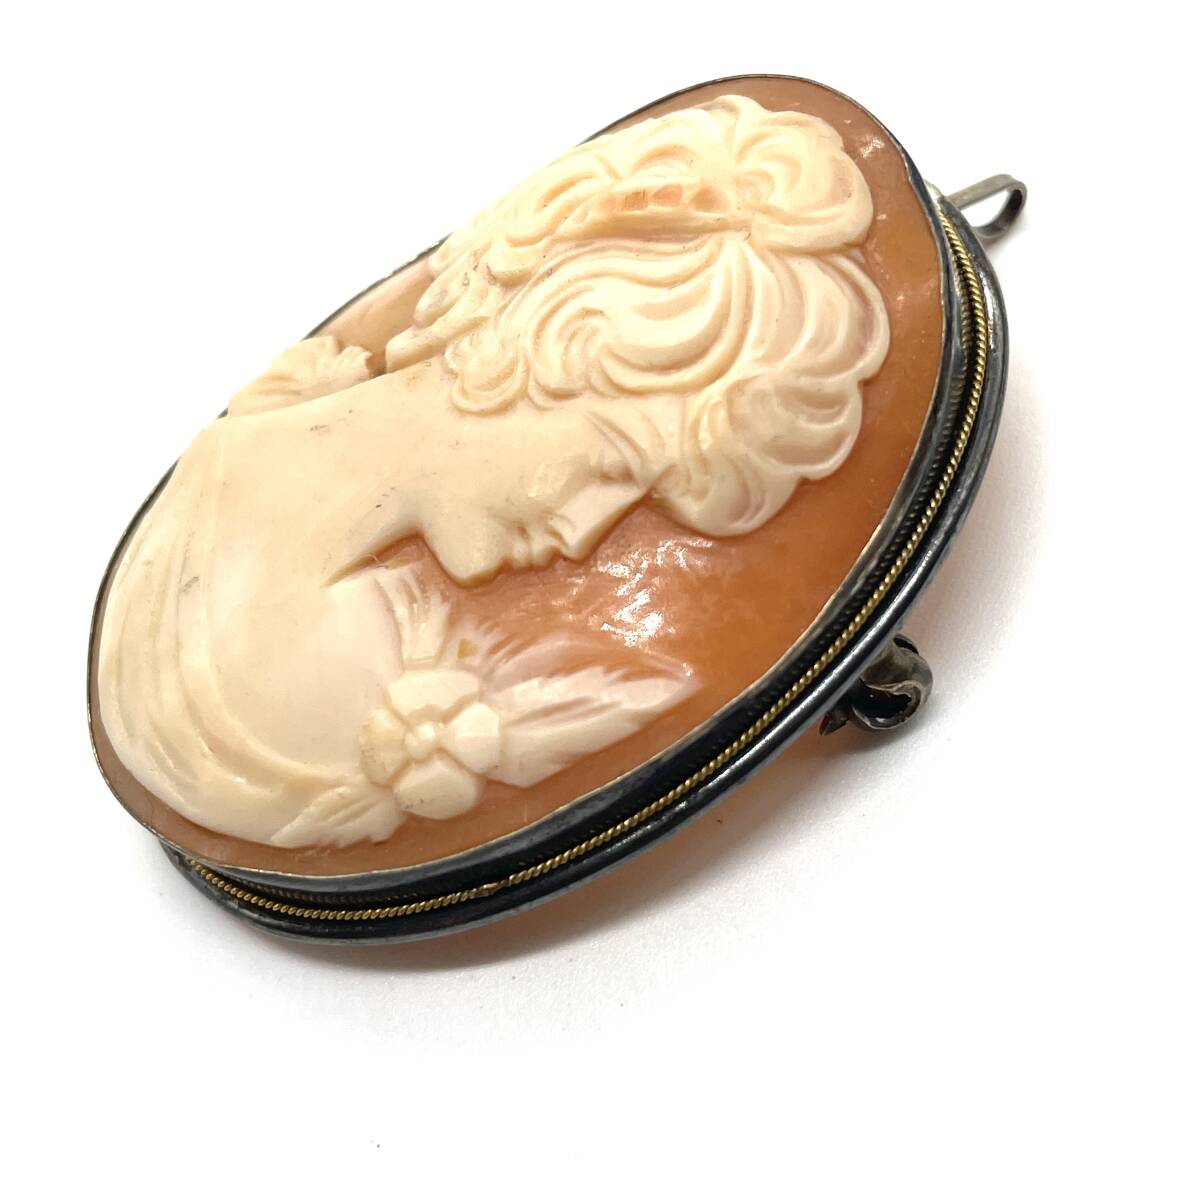 シェルカメオ ヴィンテージブローチ 約10.8g 4.7×3.7cm 貴婦人 刻印 彫刻 ジュエリー ネックレス ペンダントトップ チャーム shell cameo_画像2